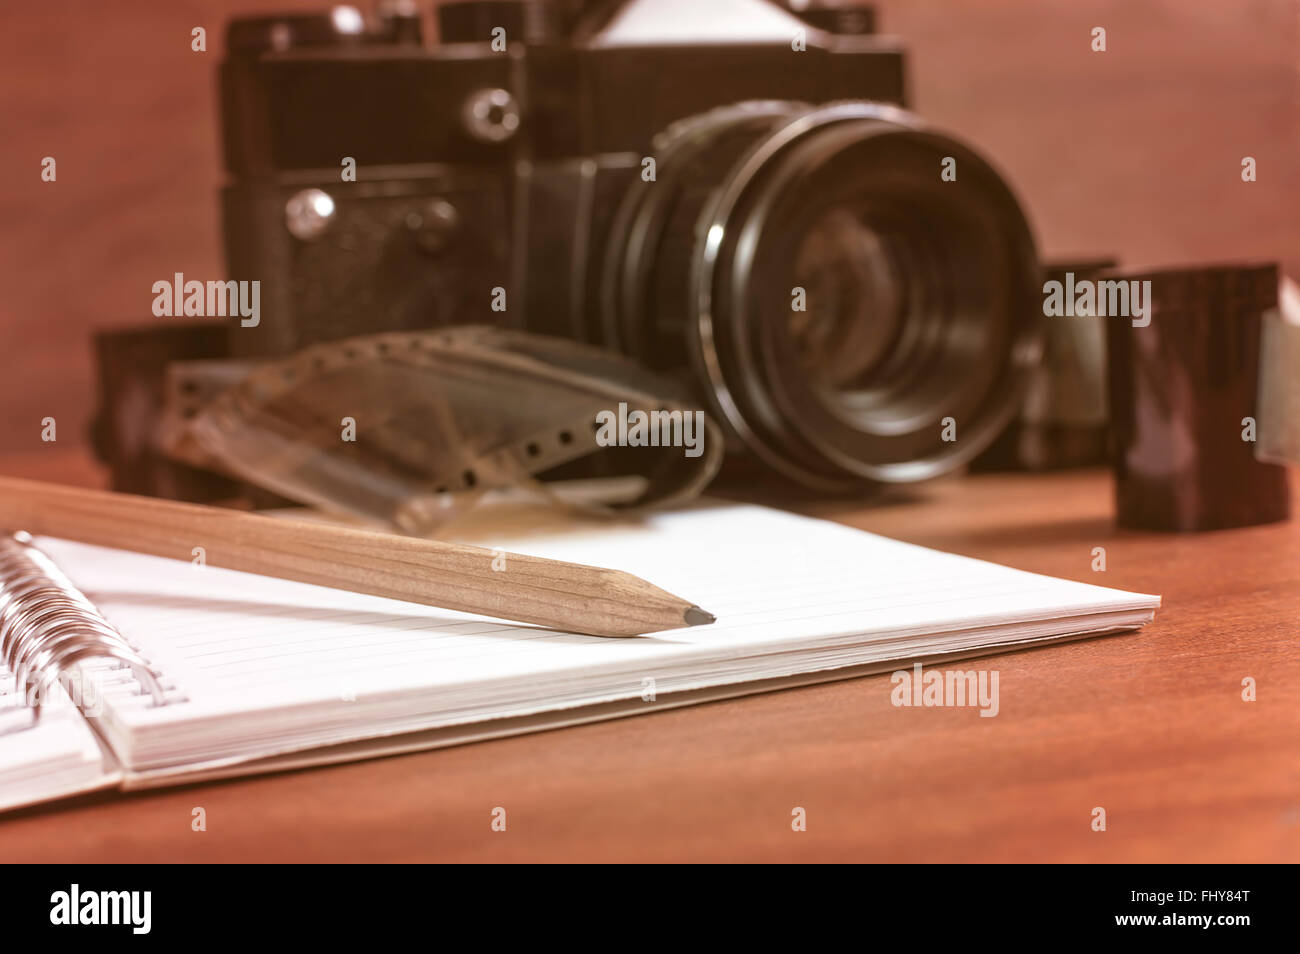 Vecchia fotocamera reflex sul tavolo accanto al negativo la striscia del film e in primo piano un notebook e una matita. Il fuoco selettivo sulla matita. Foto Stock